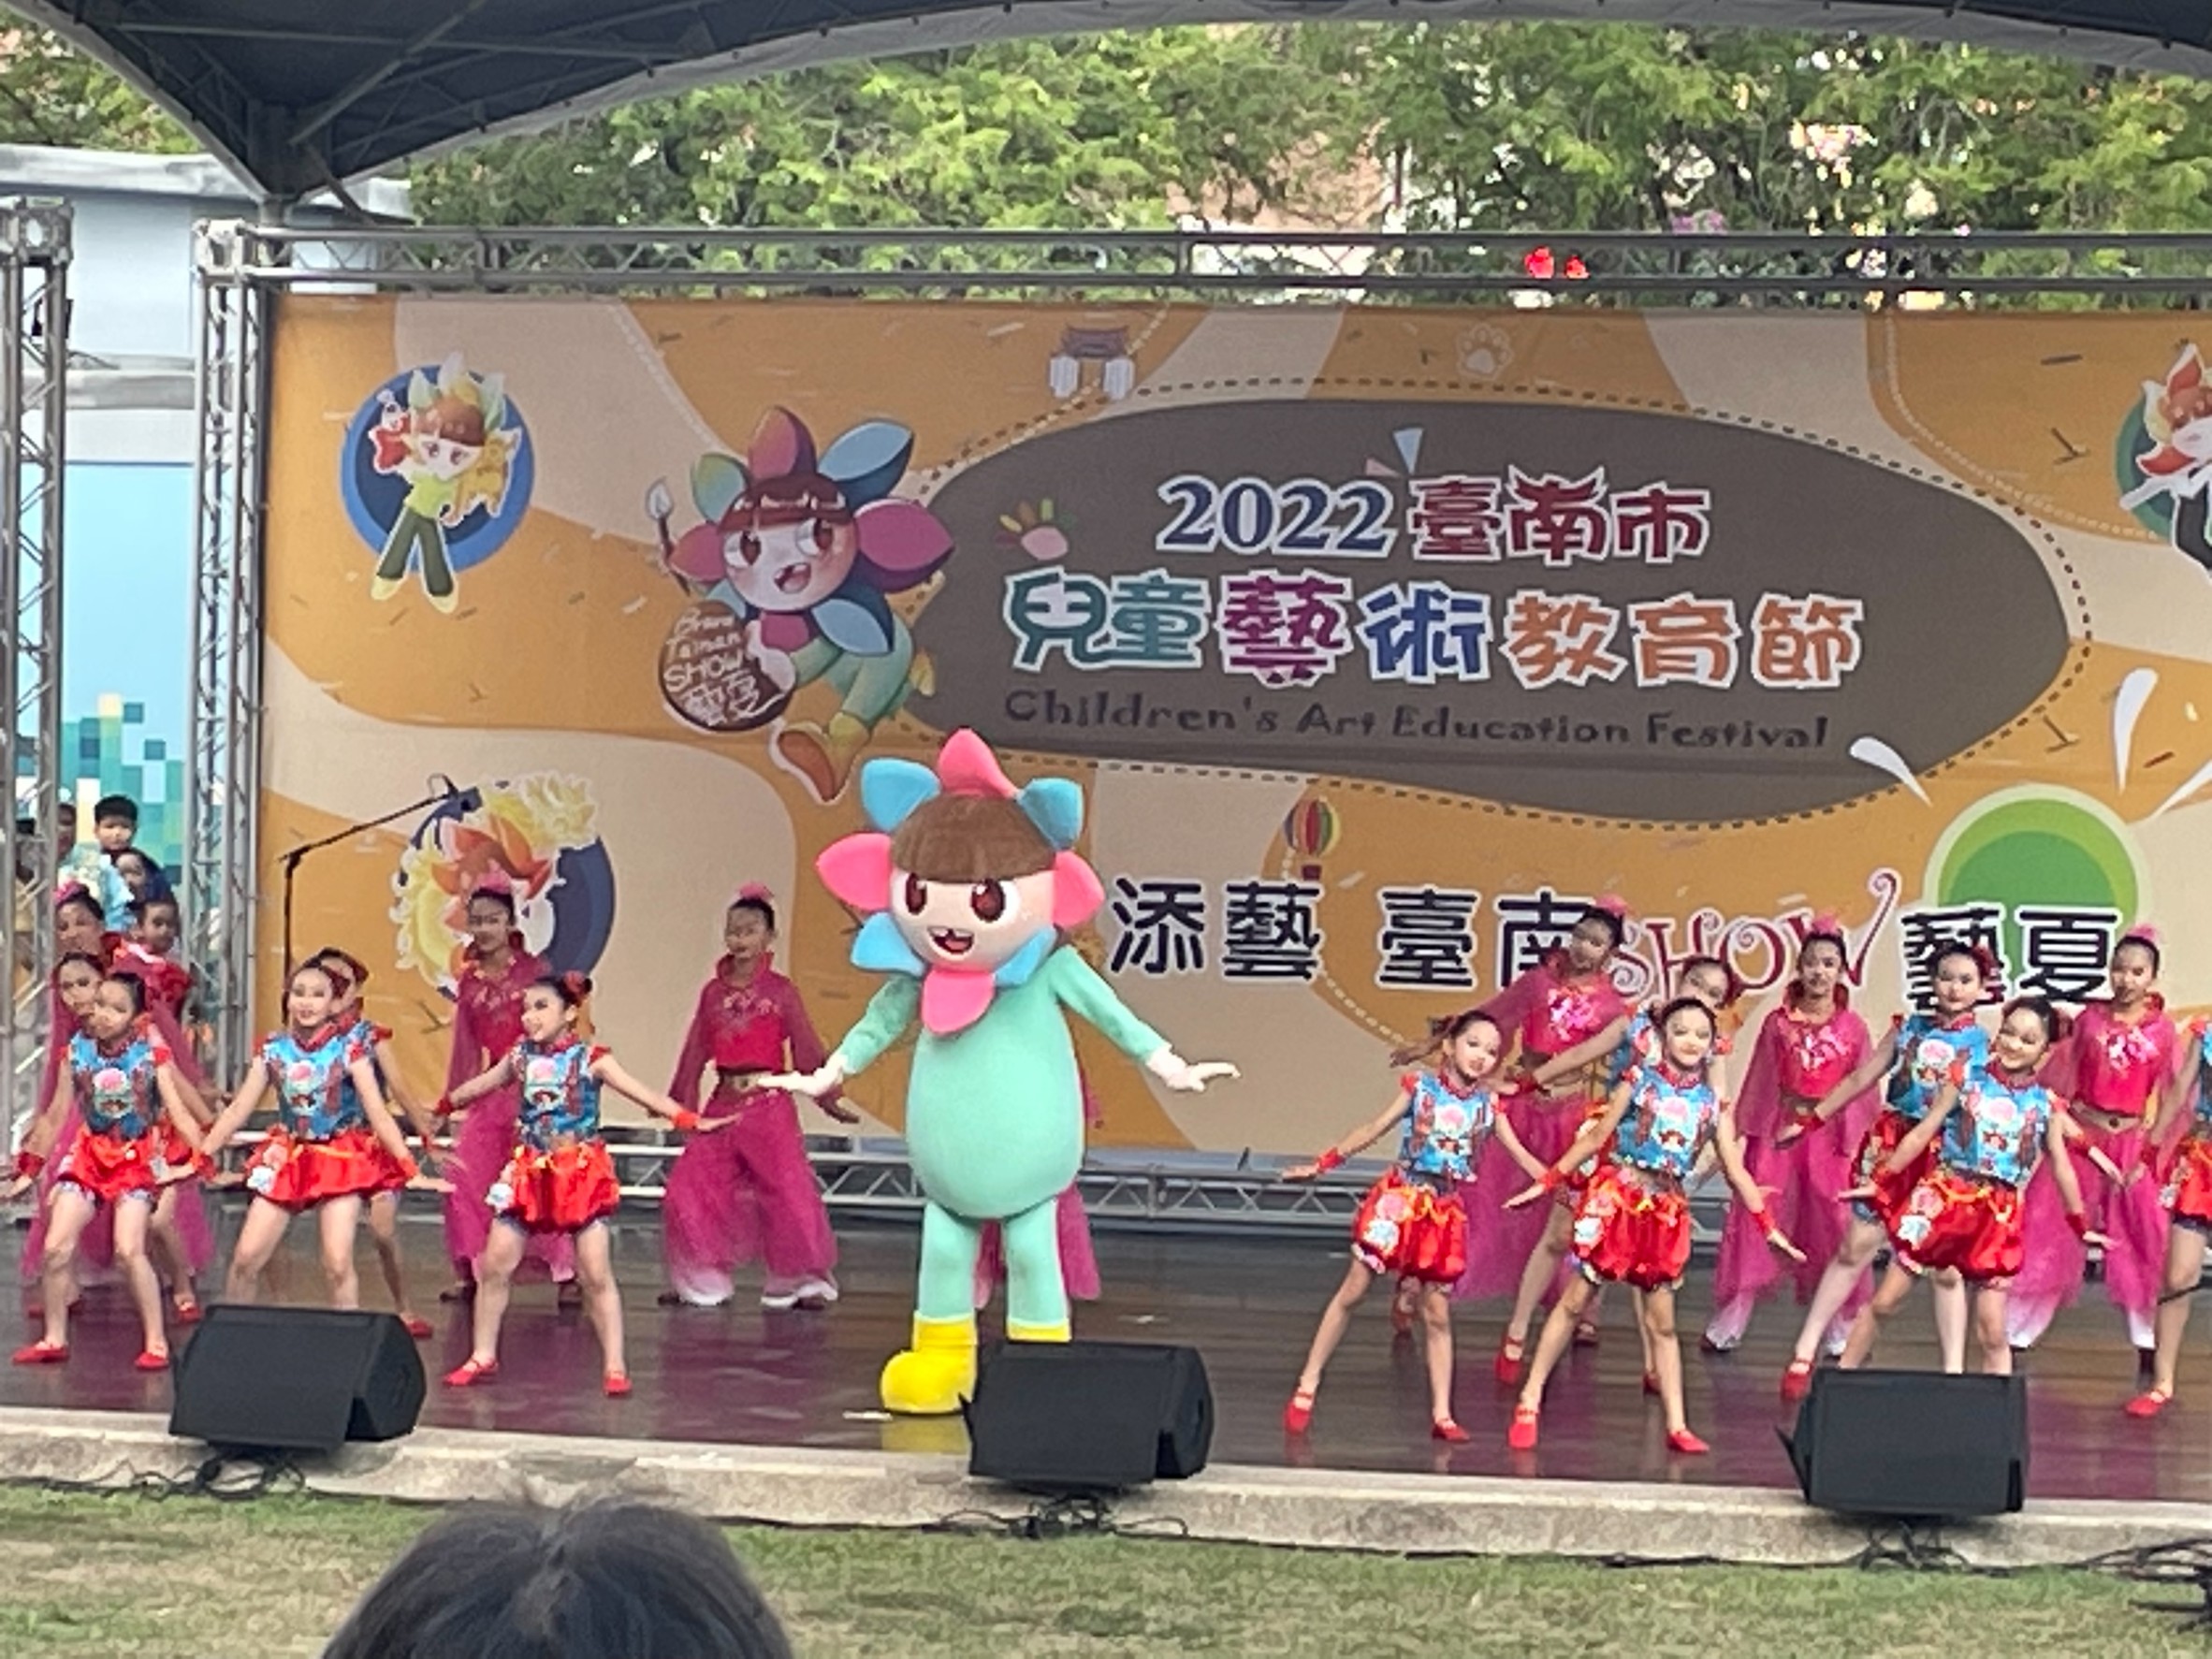 2022臺南市兒童藝術教育節系列活動最終回   壓軸登場！